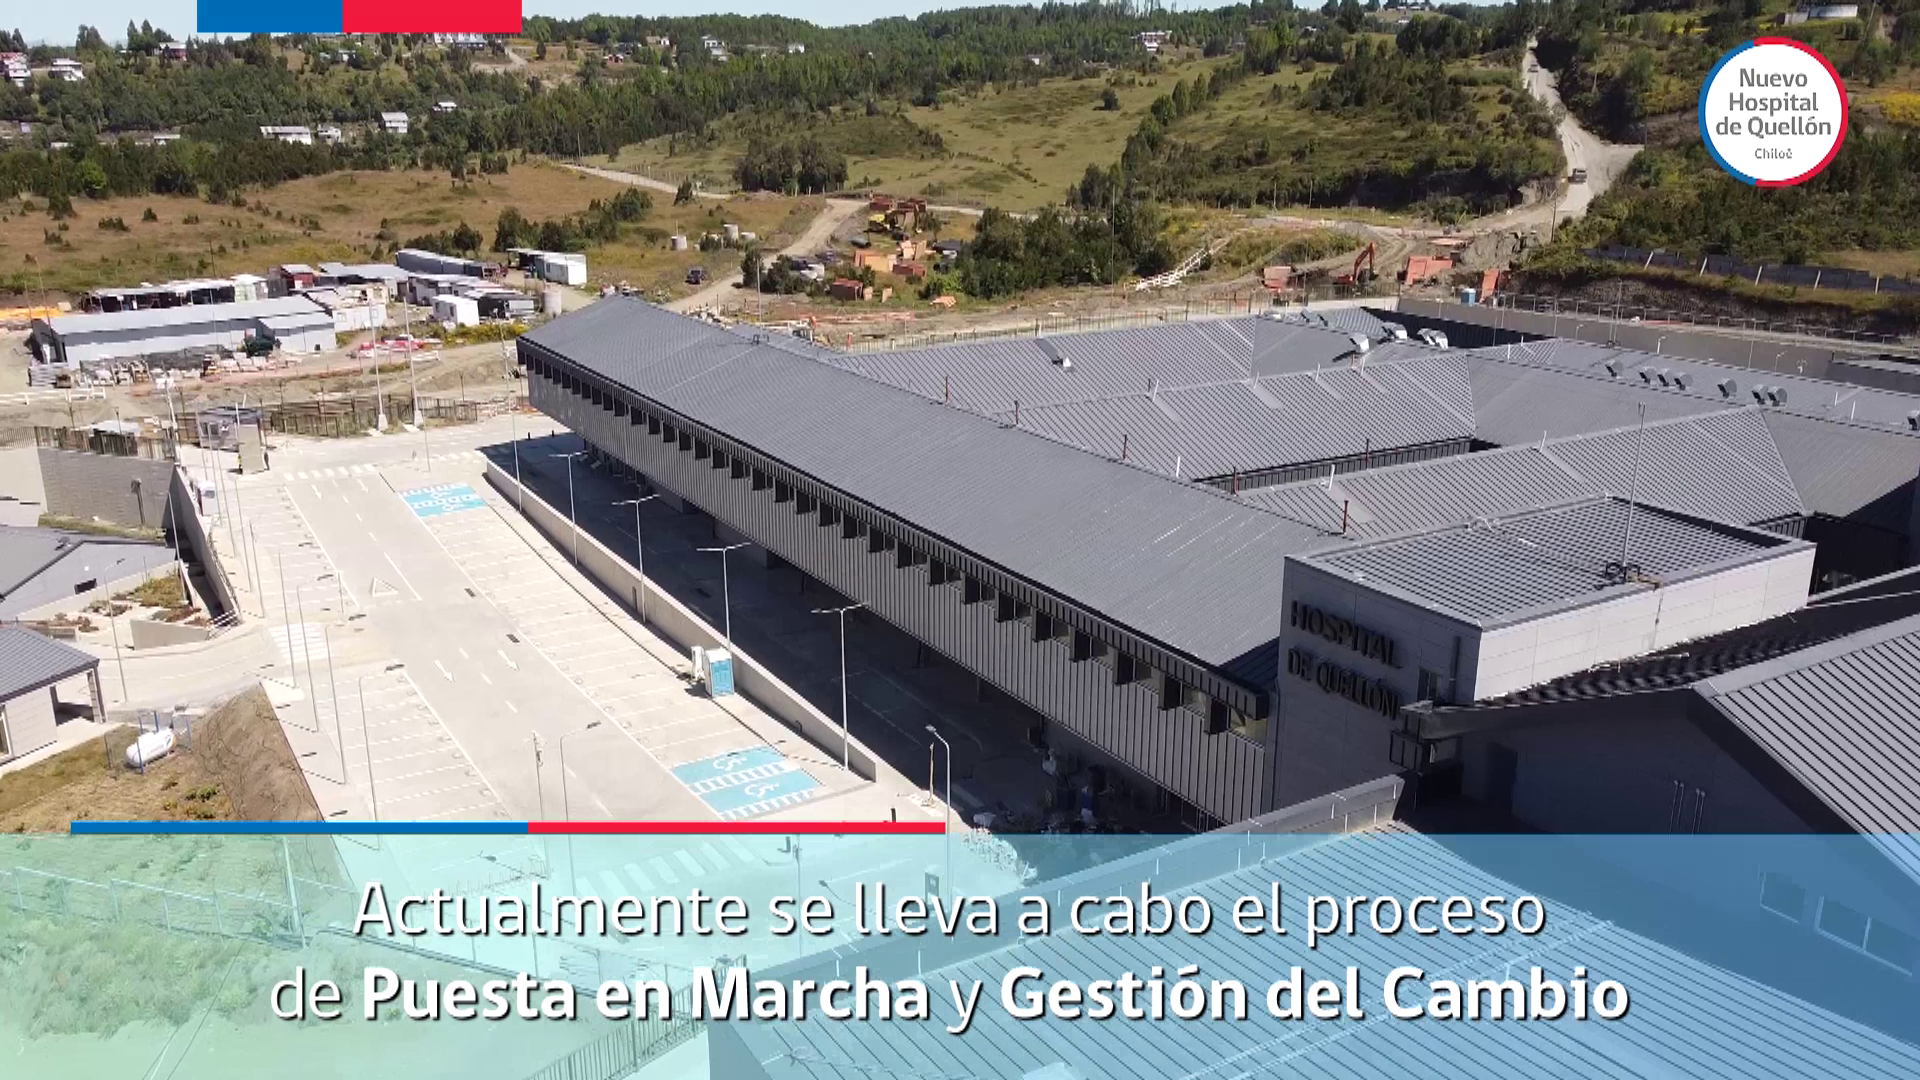 Comienza implementación del Nuevo Hospital de Quellón